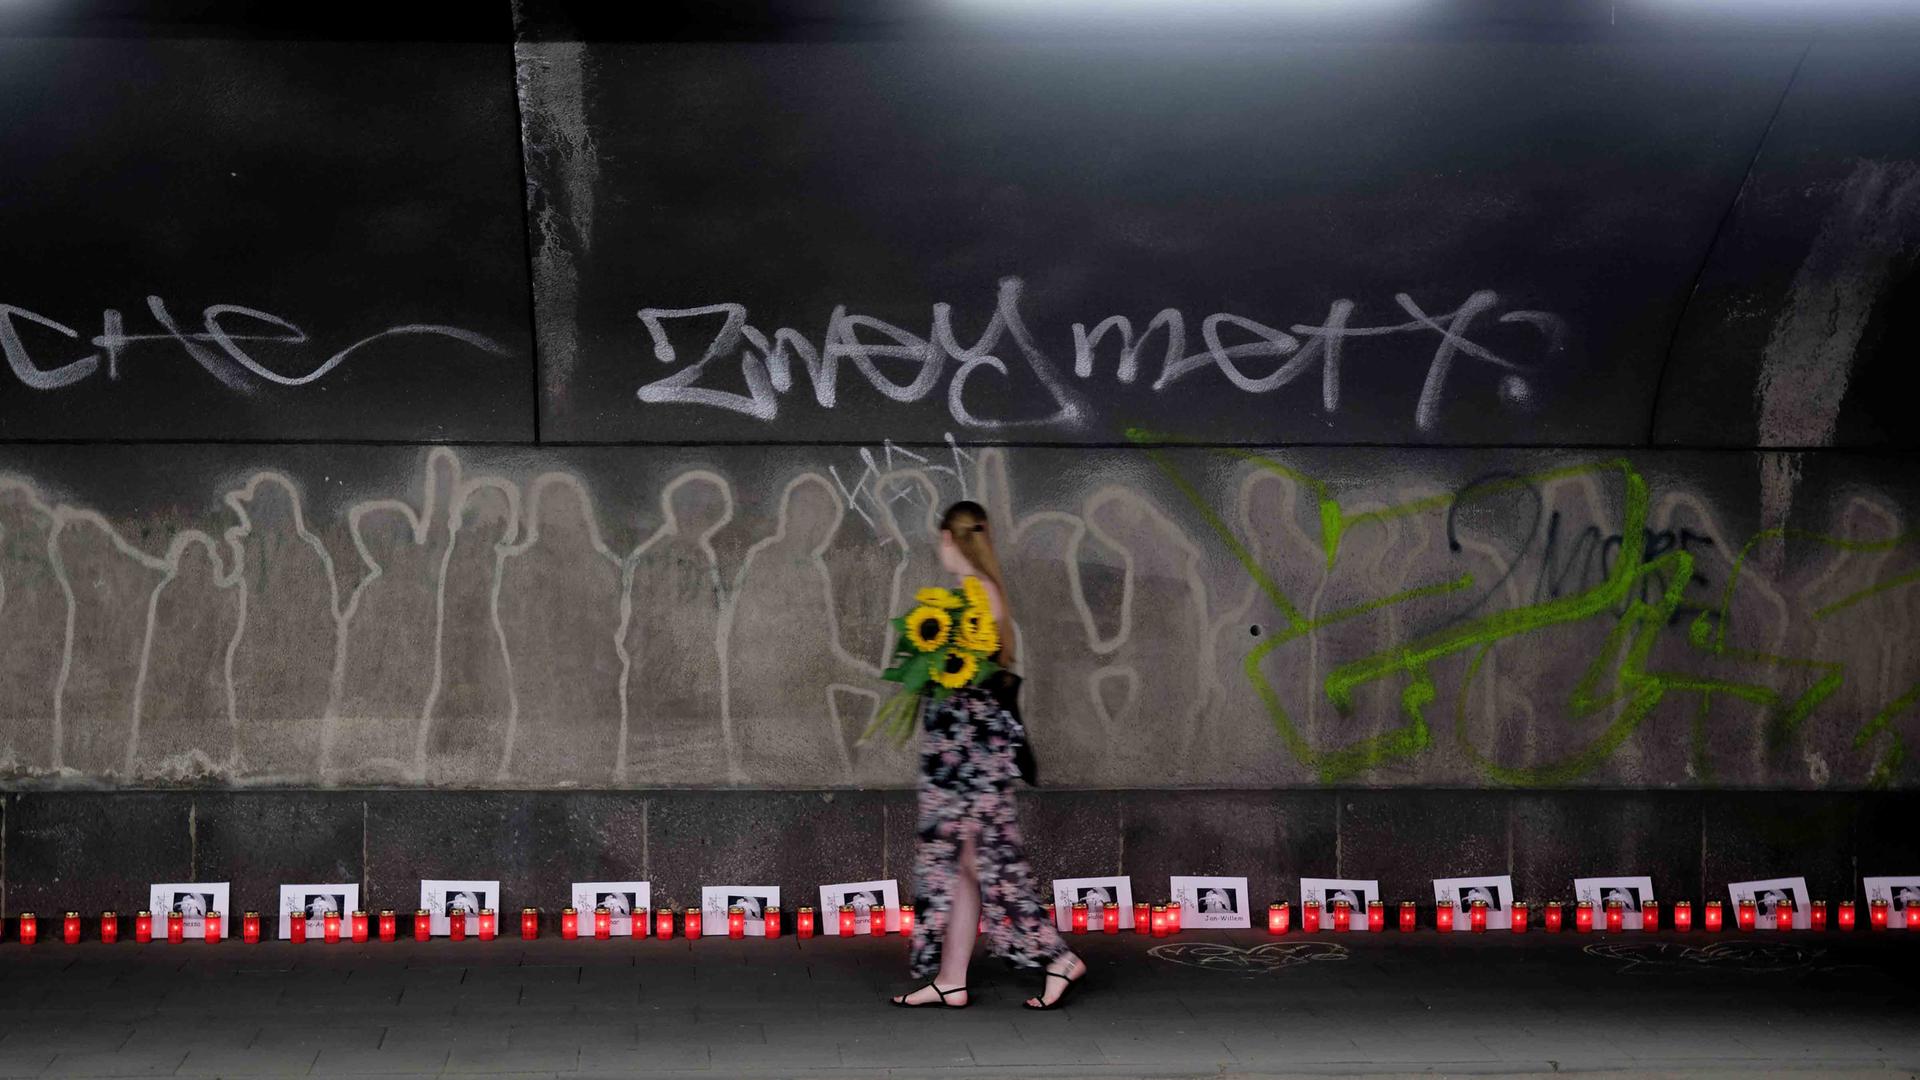 Kerzen und Karten mit den Namen der 21 Opfer stehen am 10. Jahrestag der Loveparade-Katastrophe in einem Tunnel, der zum Ort der Katastrophe führt. Bei der Loveparade am 24. Juli 2010 starben am einzigen Zu- und Abgang zum Veranstaltungsgelände in einem Gedränge 21 junge Menschen.